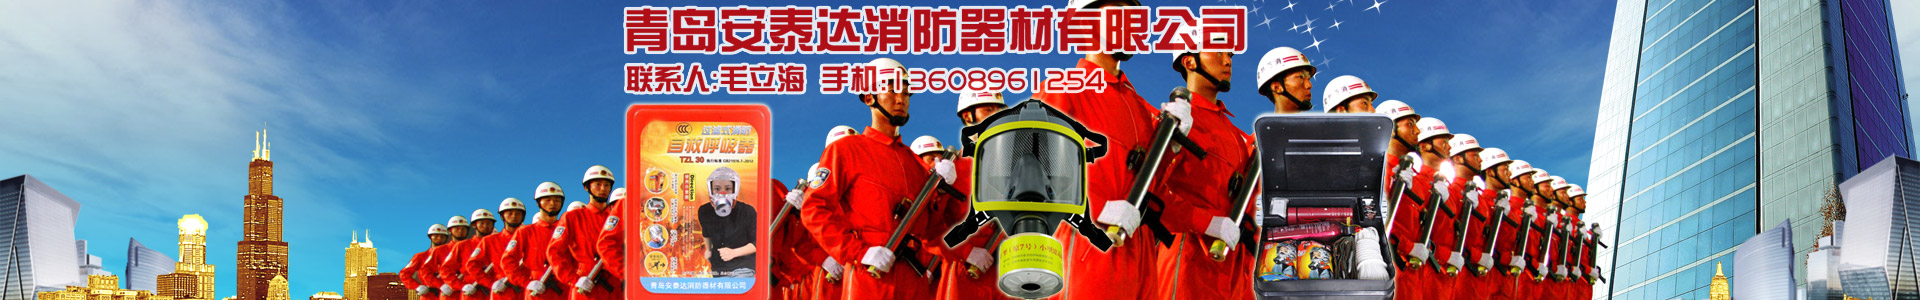 企業新聞-青島安泰達消防器材有限公司-